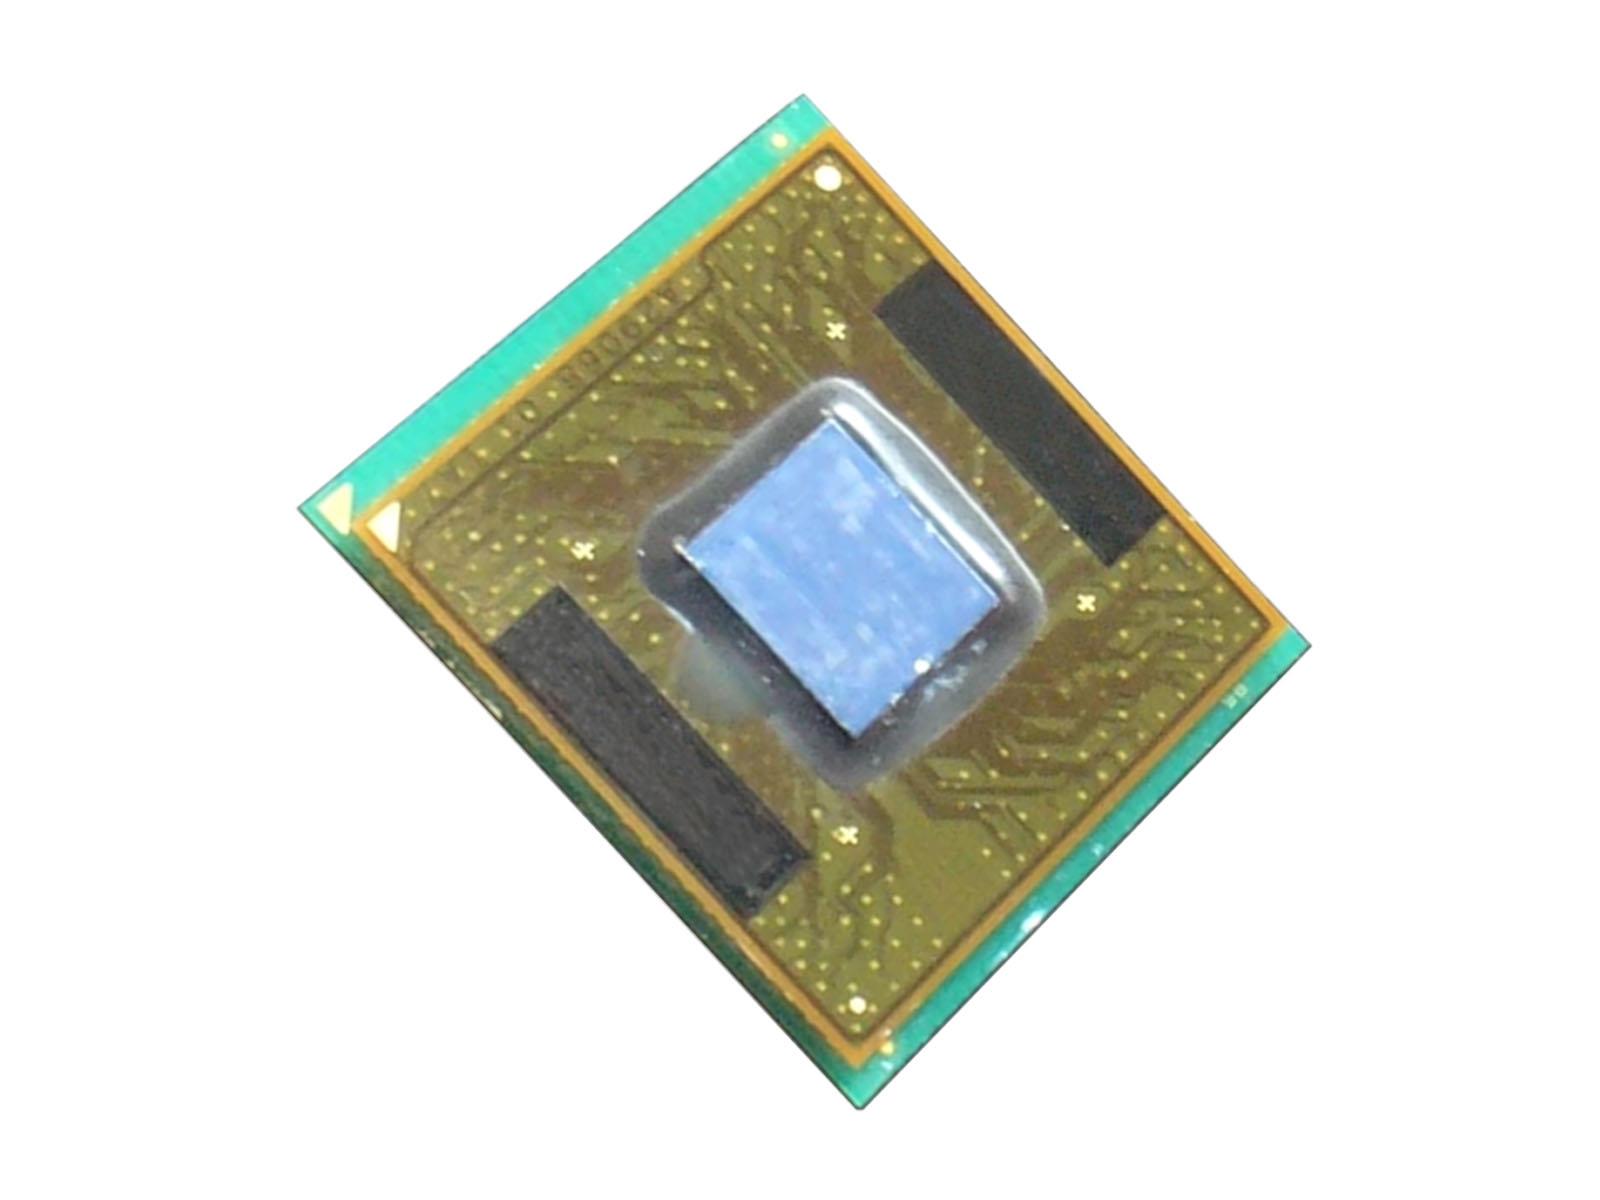 Intel Pentium 3 CPU